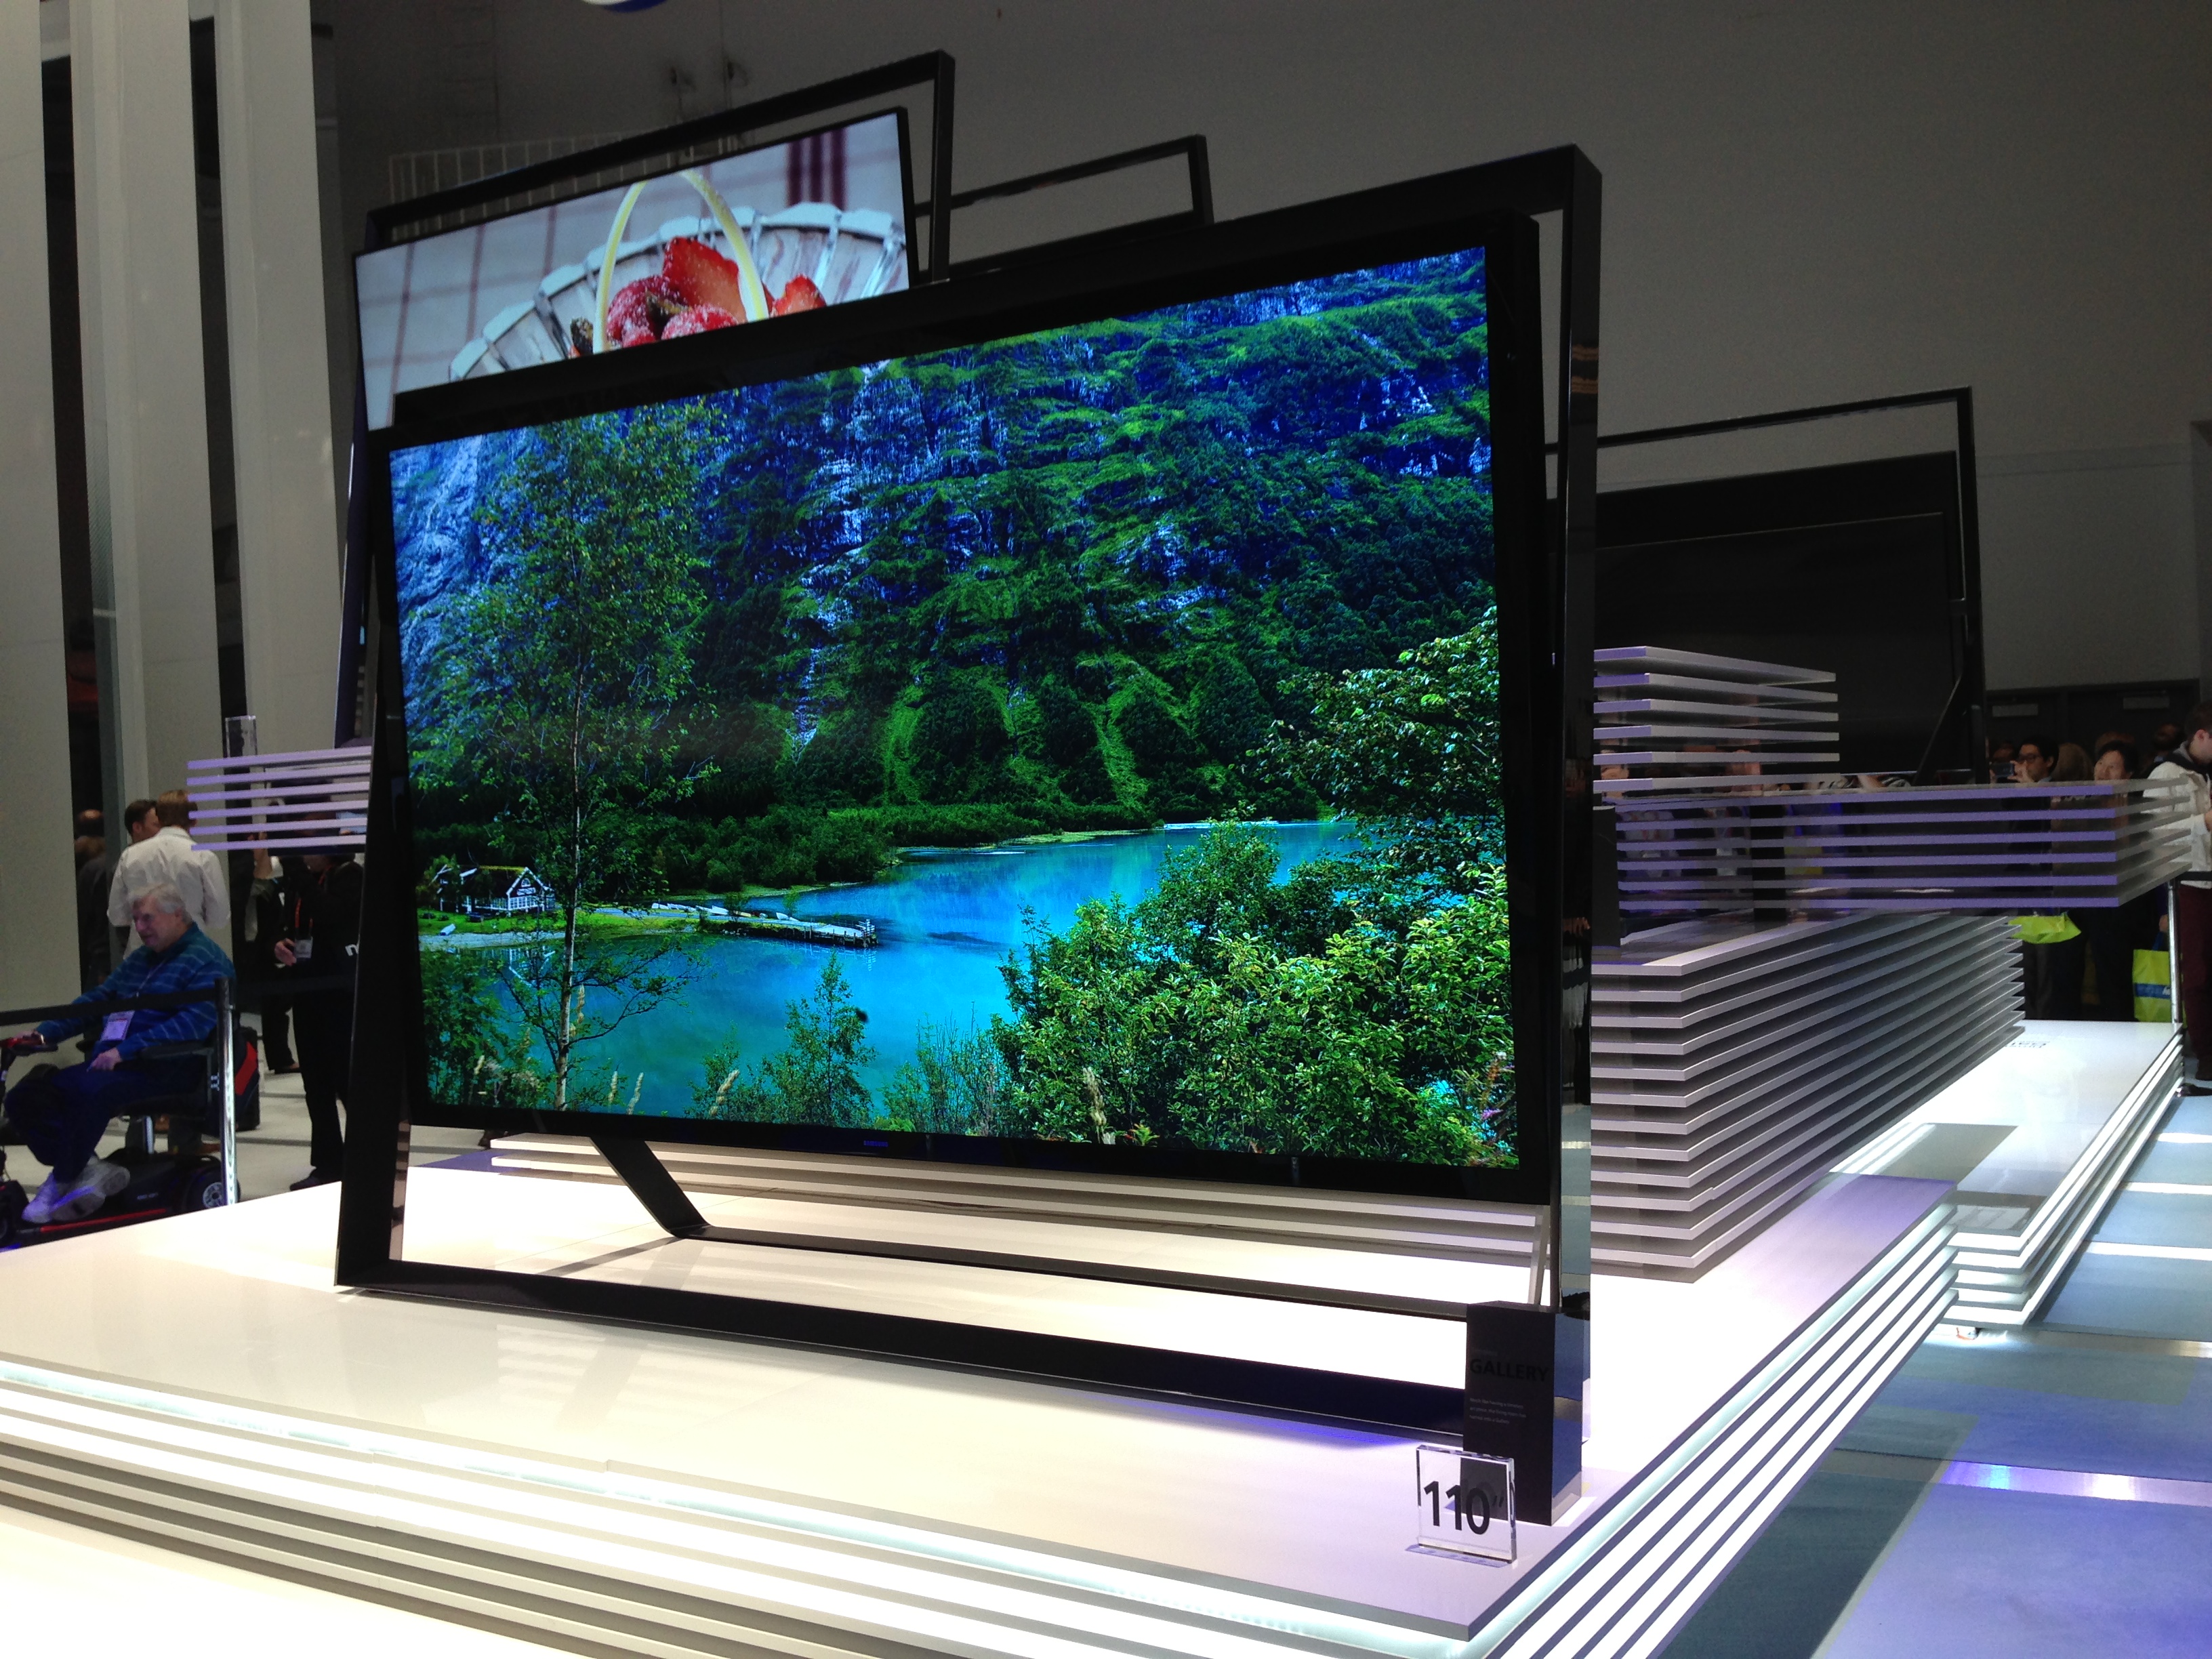 Куплю телевизоры оптом. Самый большой телевизор Samsung 110 дюймов. Плазма самсунг 85 дюймов. Экран 110 дюймов плазма. Samsung UHD TV 110 дюймов.